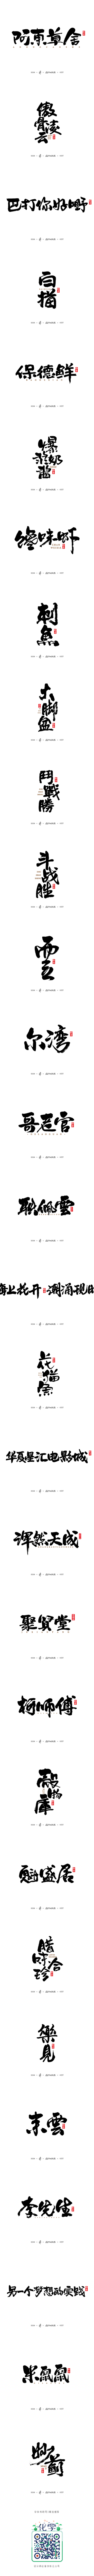 商业書法字体30例-字体传奇网-中国首个...